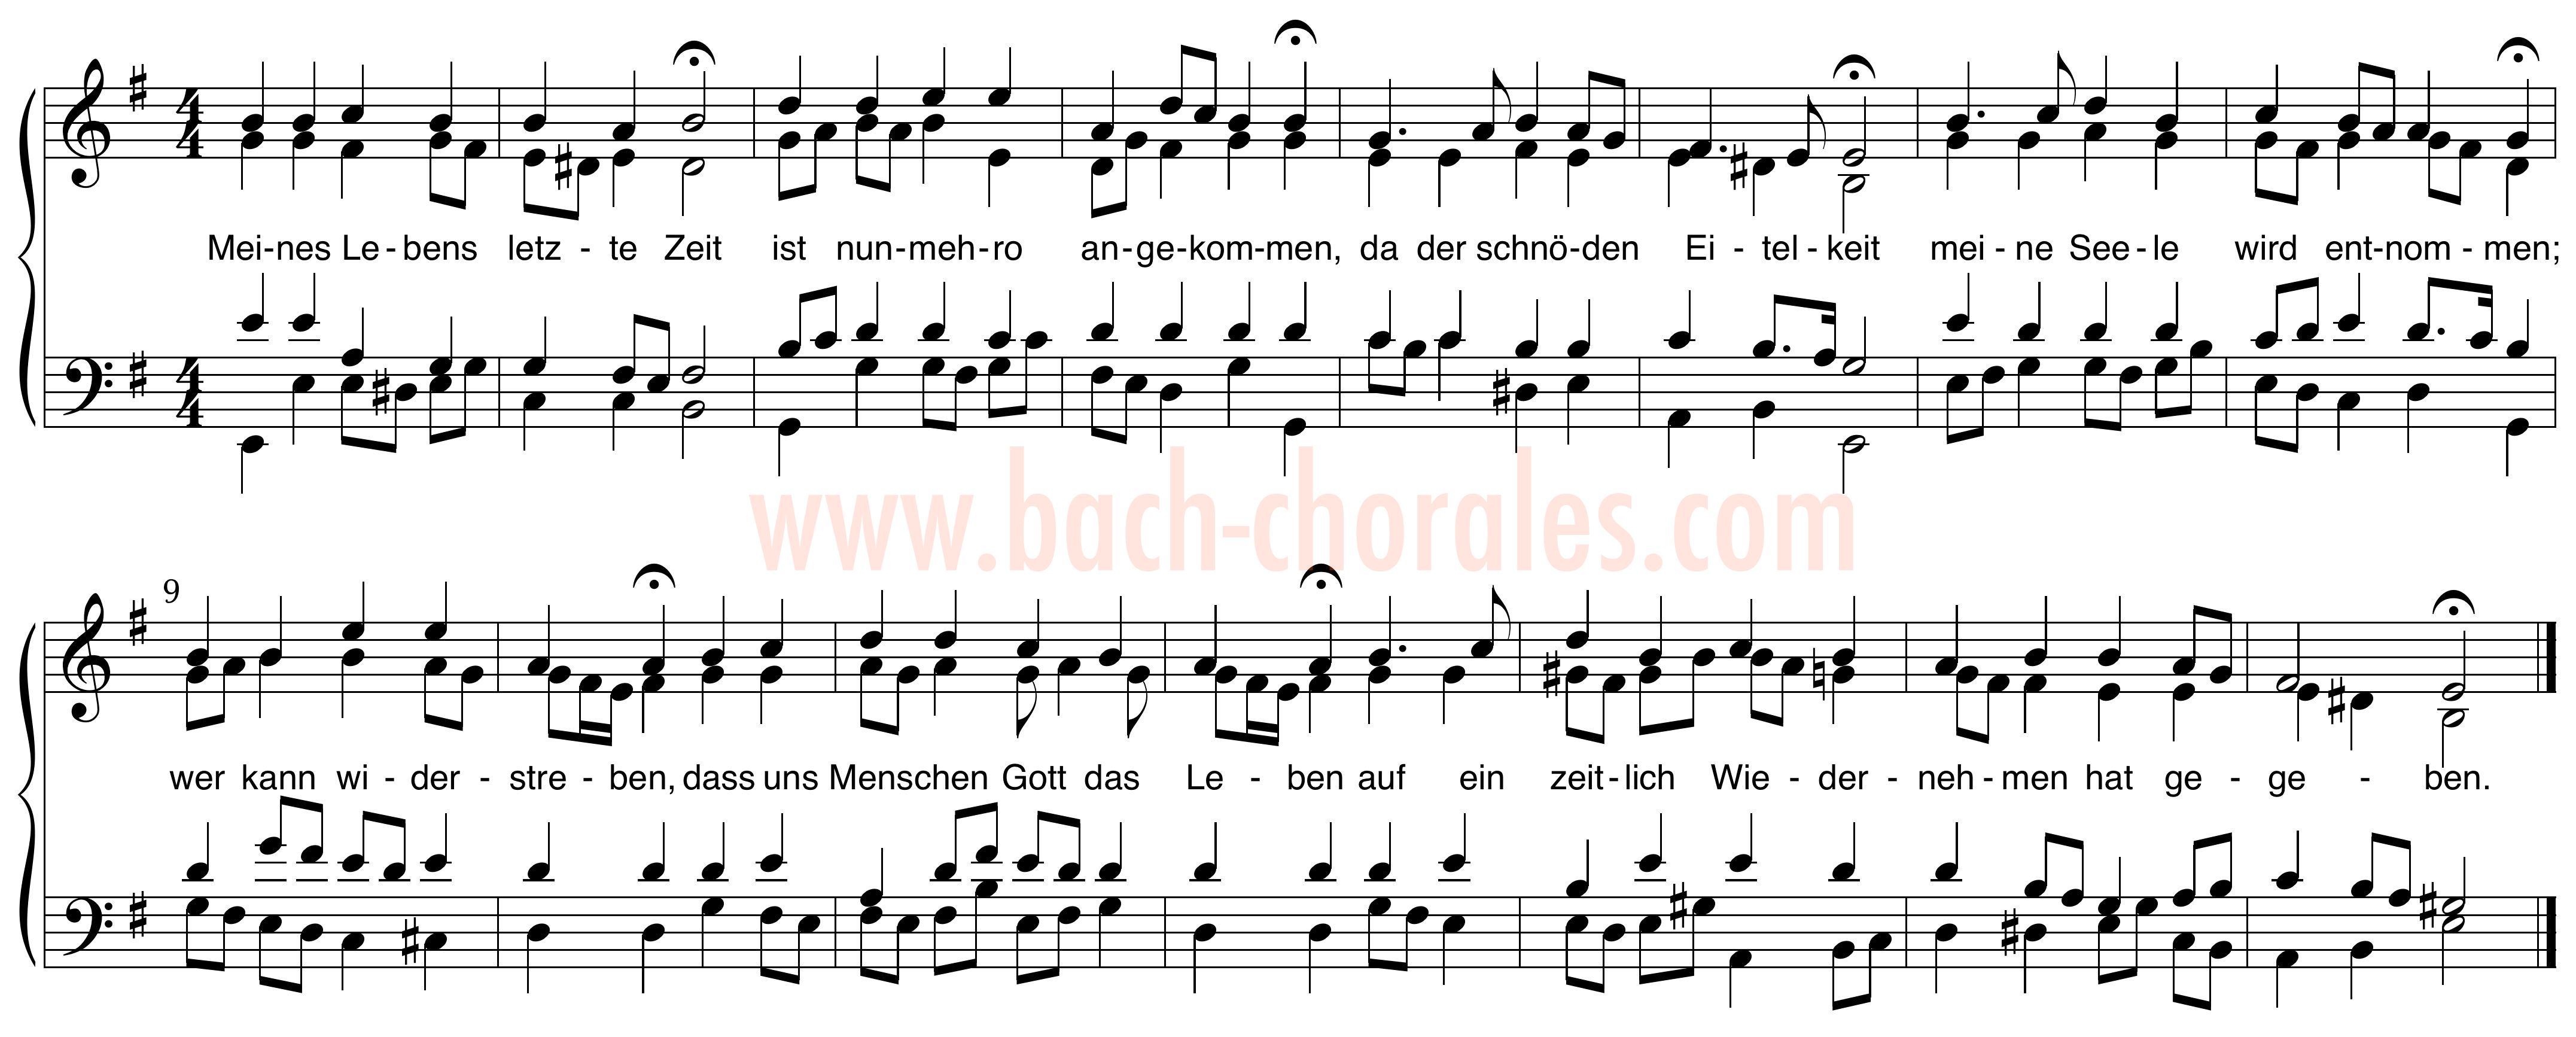 notenbeeld BWV 381 op https://www.bach-chorales.com/